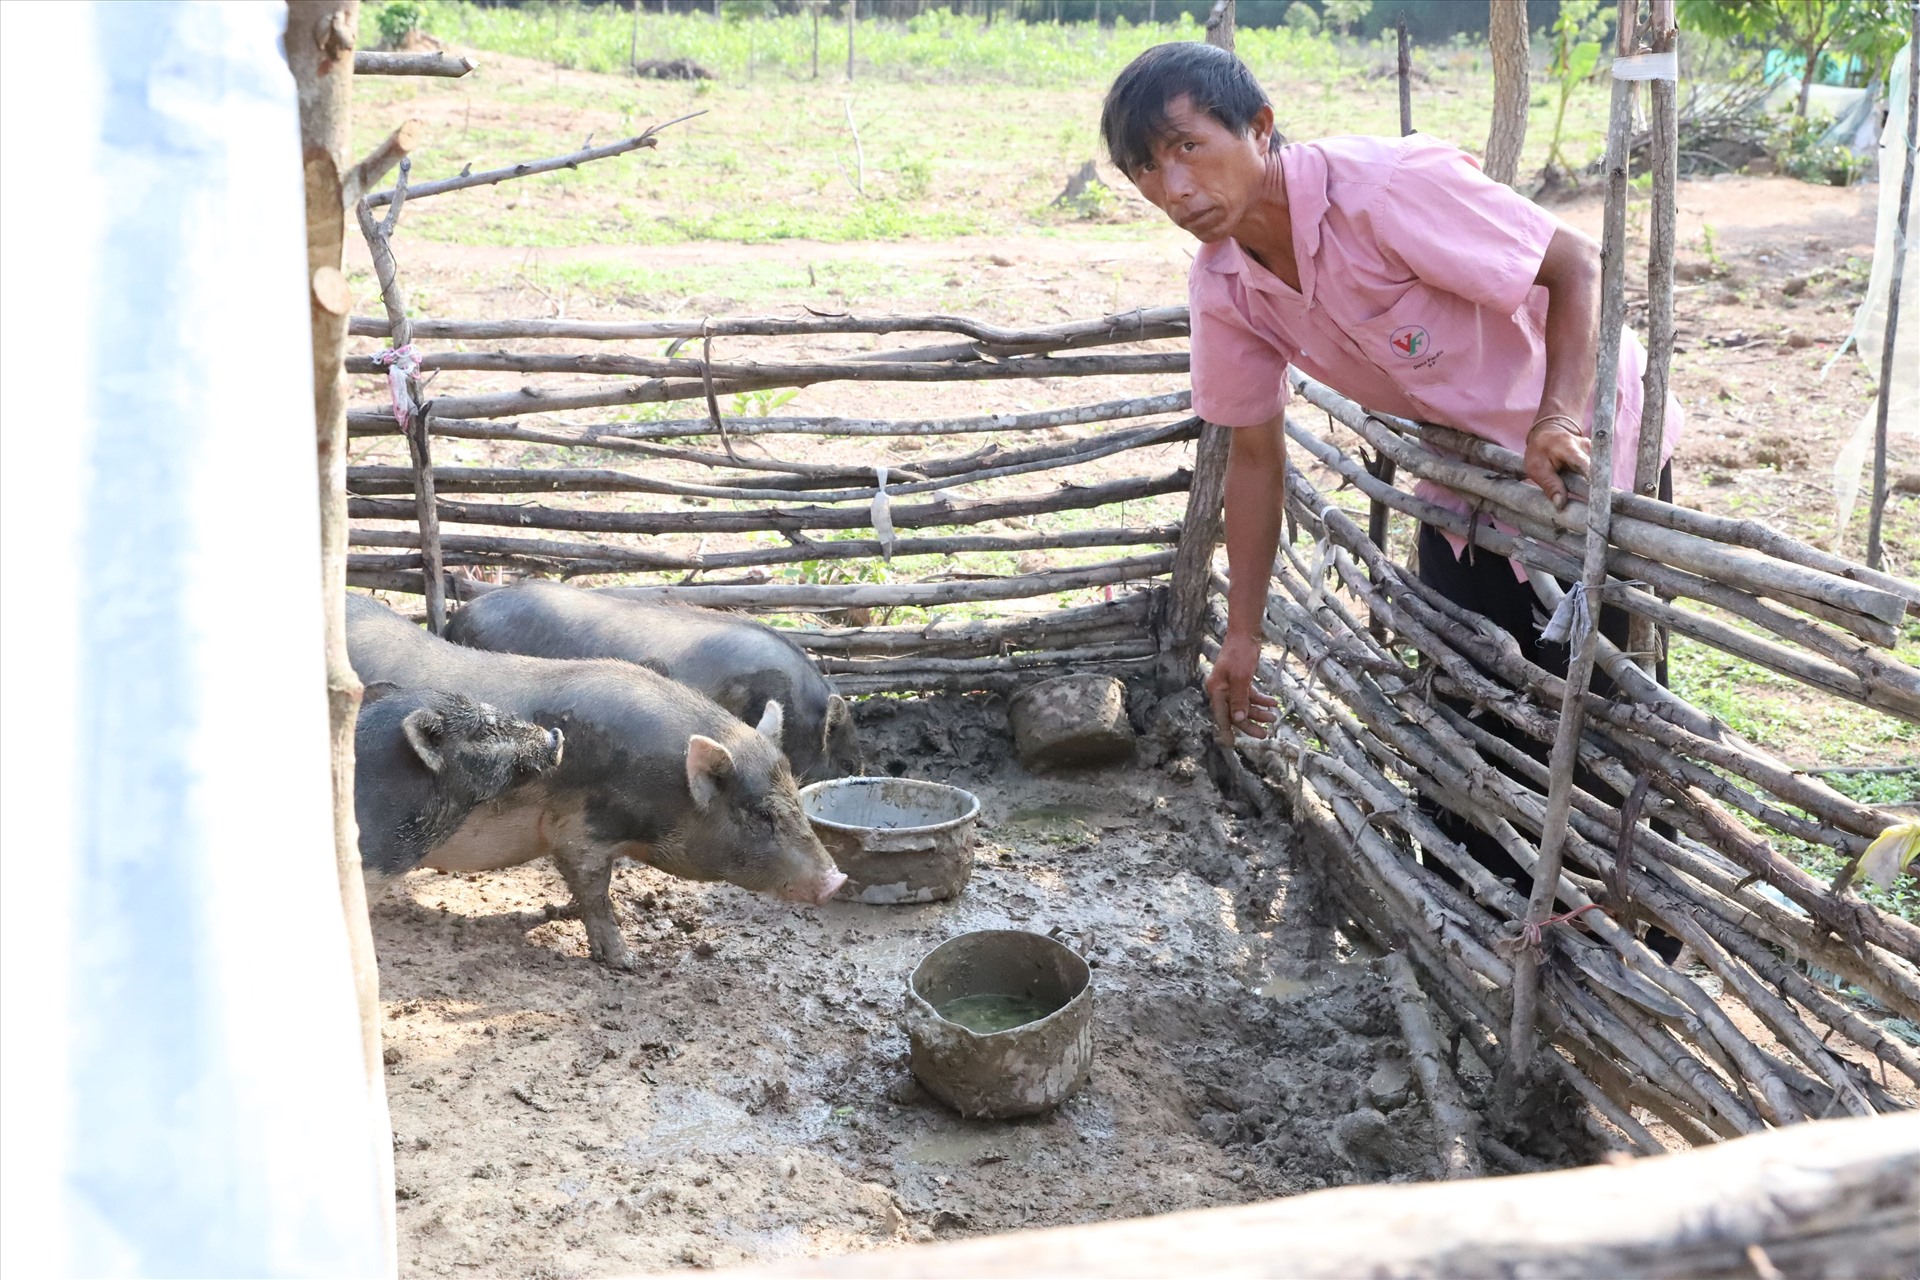 Cũng như người dân trong làng, gia đình Cháy mặc dù còn nhiều khó khăn nhưng vẫn tăng gia sản xuất, nuôi lợn gà để có thêm thu nhập.